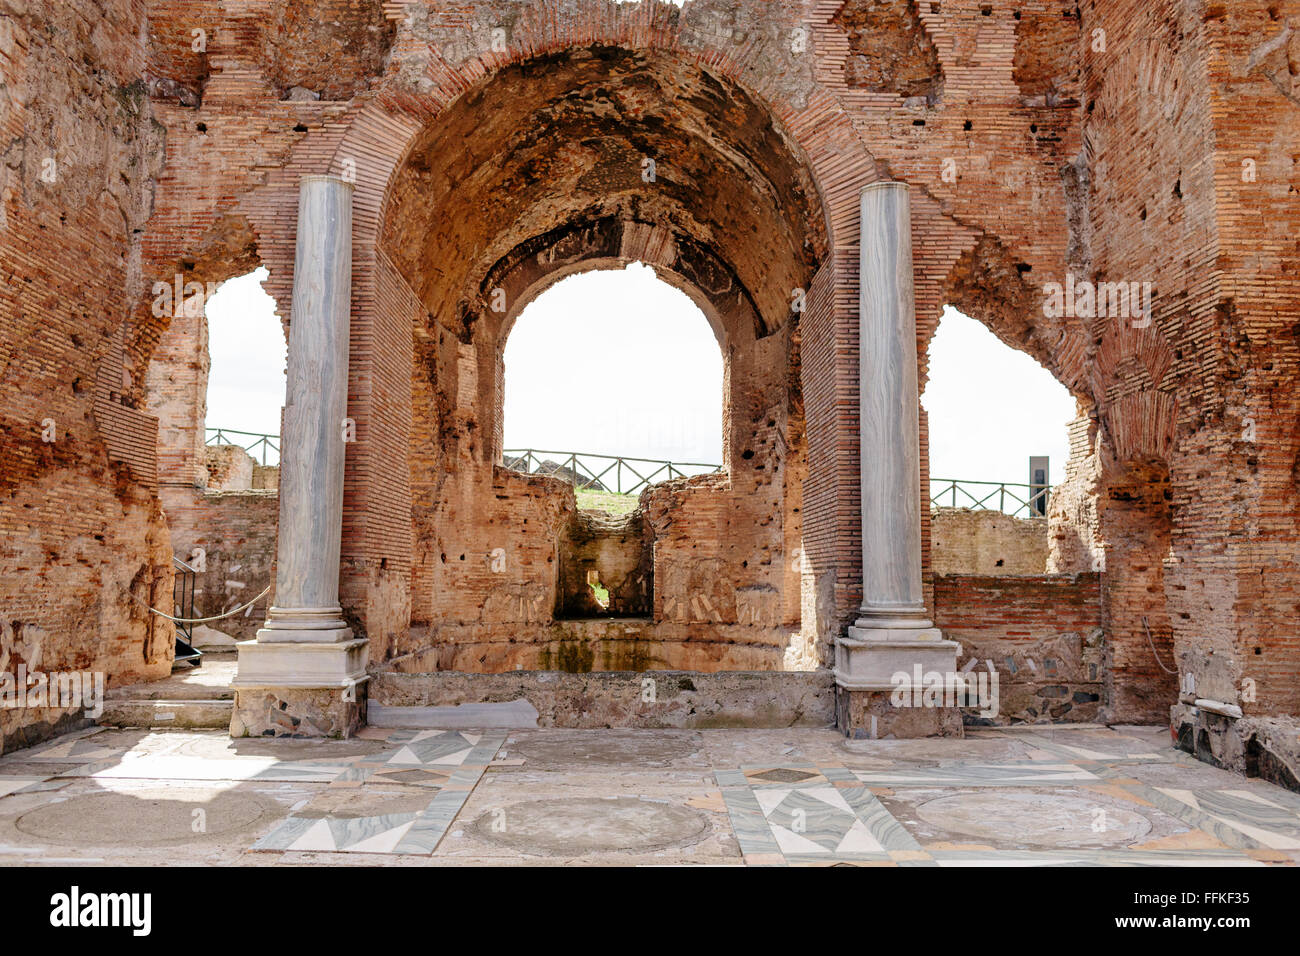 Interior de la Villa de Los Quintilii, una ruina histórica en la Via Appia / Appian Way en Roma. Foto de stock